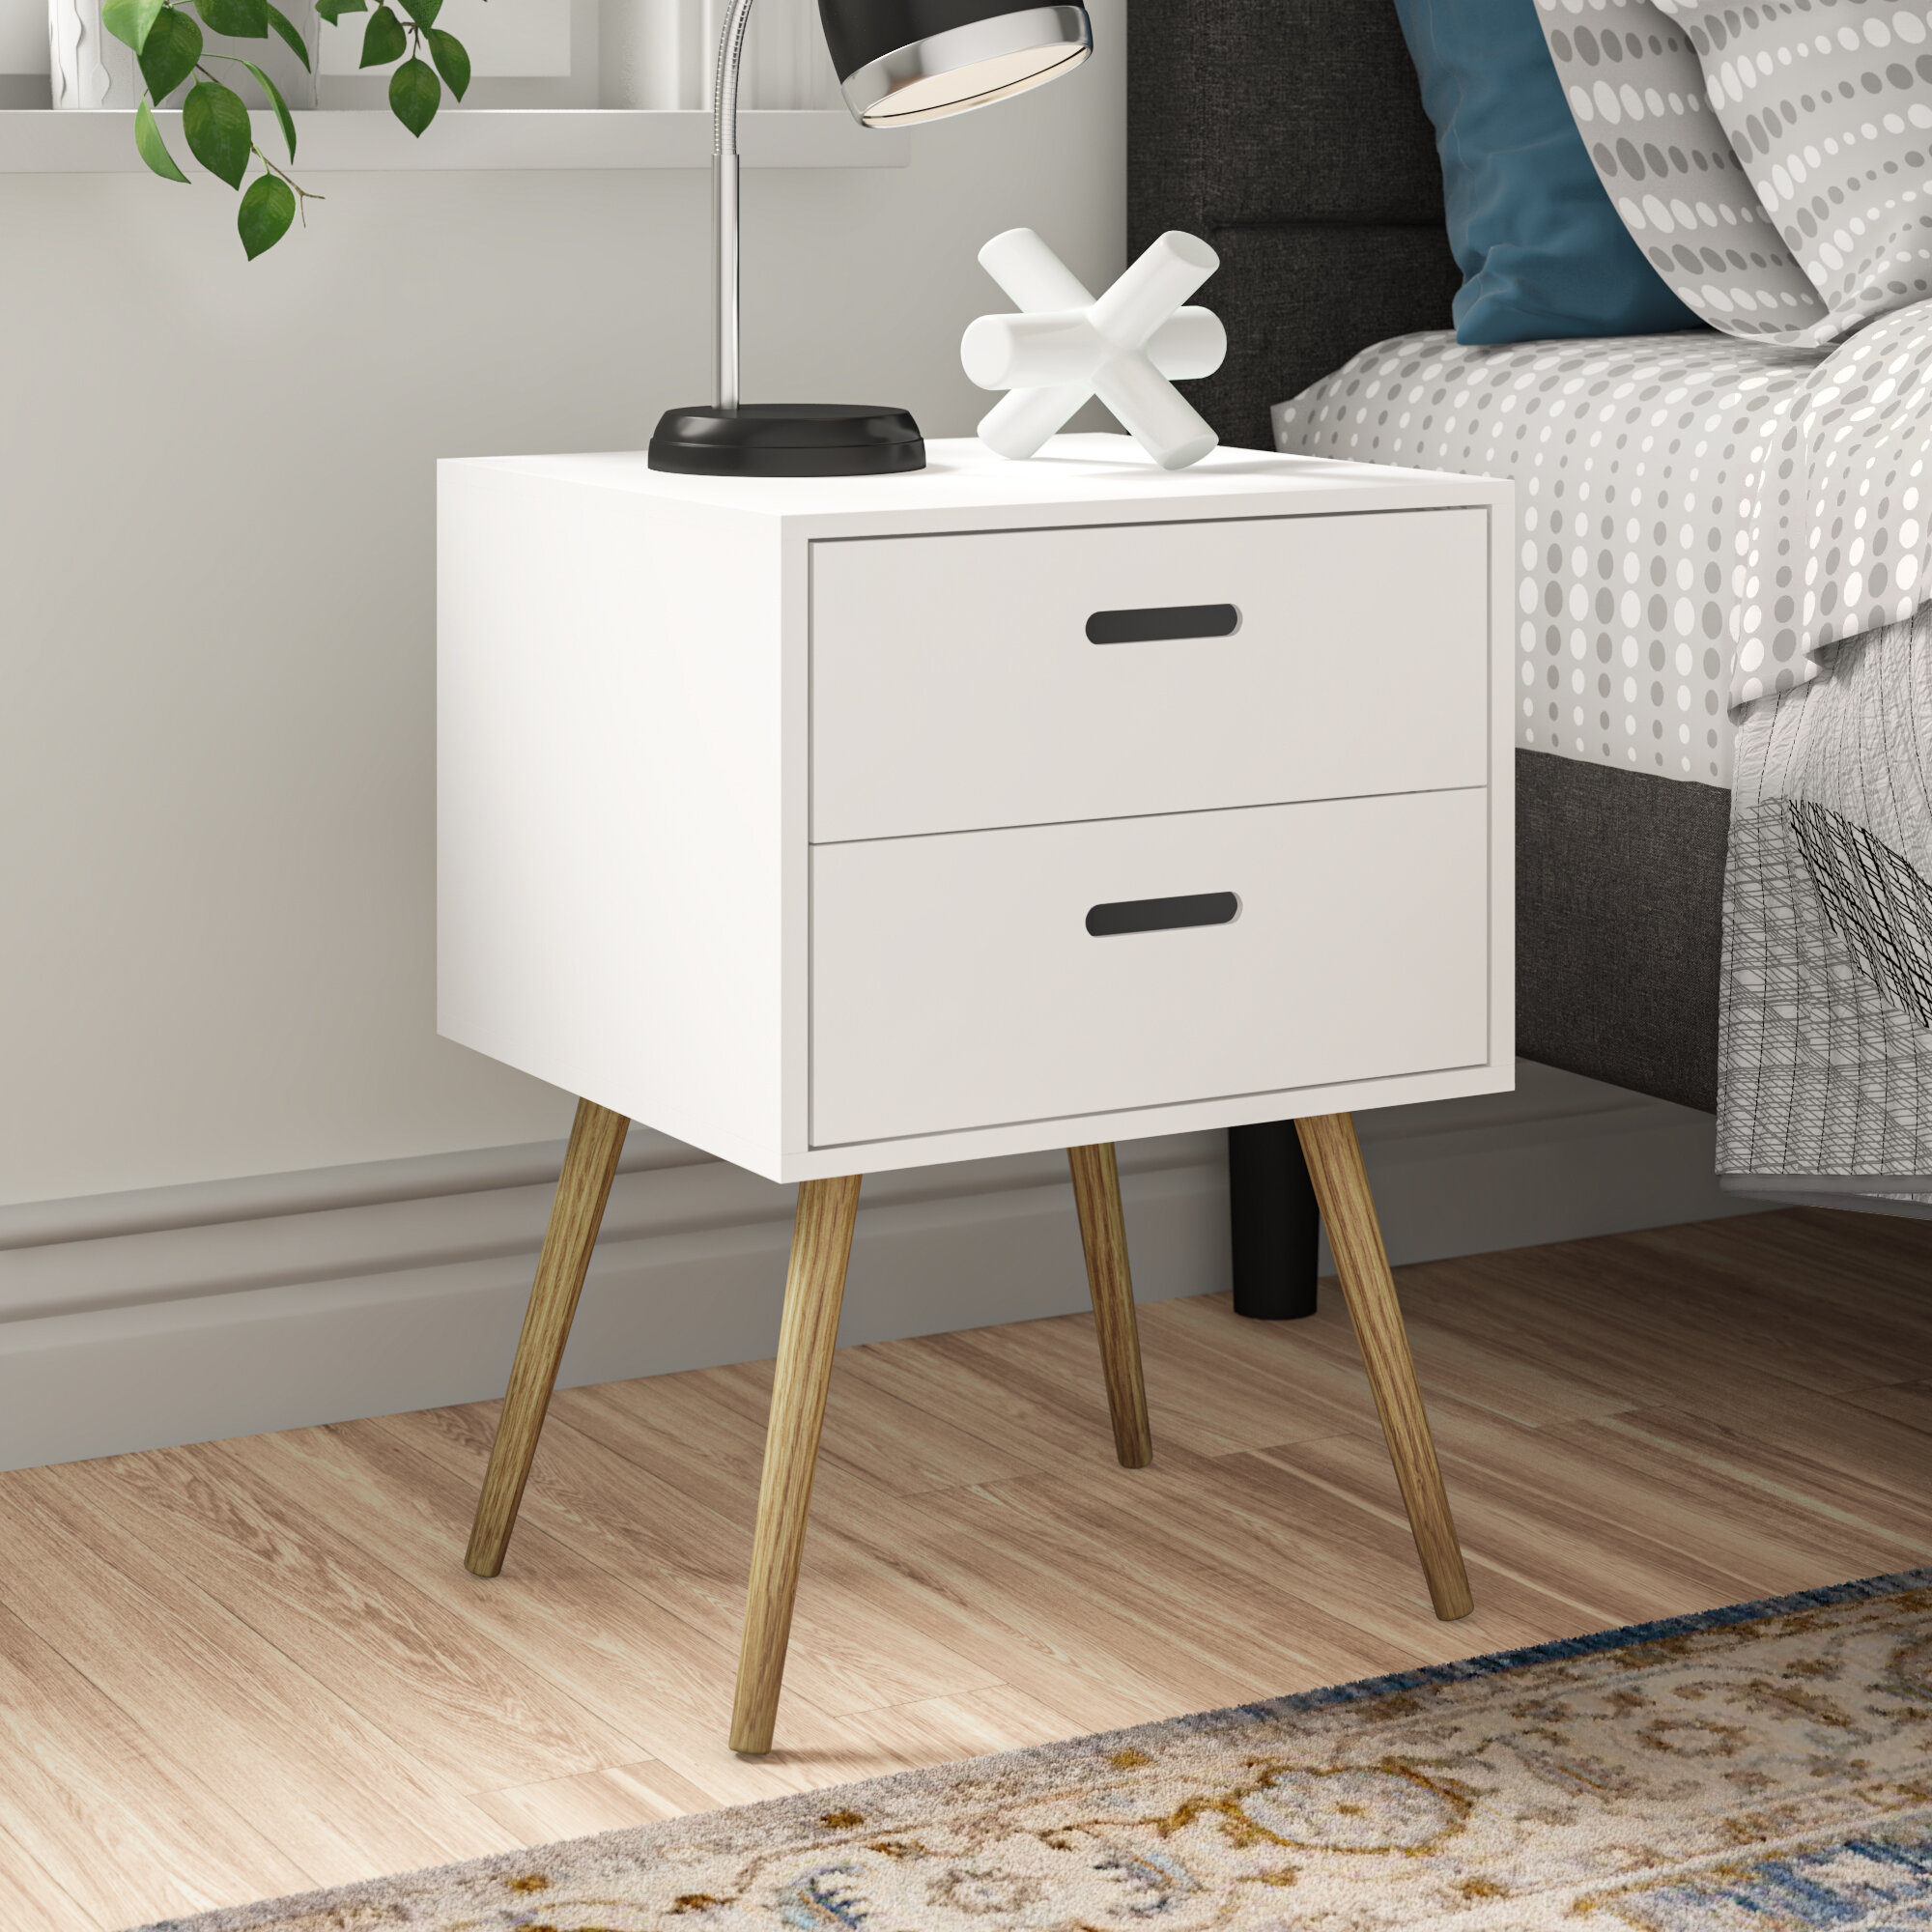 2 Drawer Scandinavian Wooden Bedside Table Cabinet Bedroom Storage Nightstand 